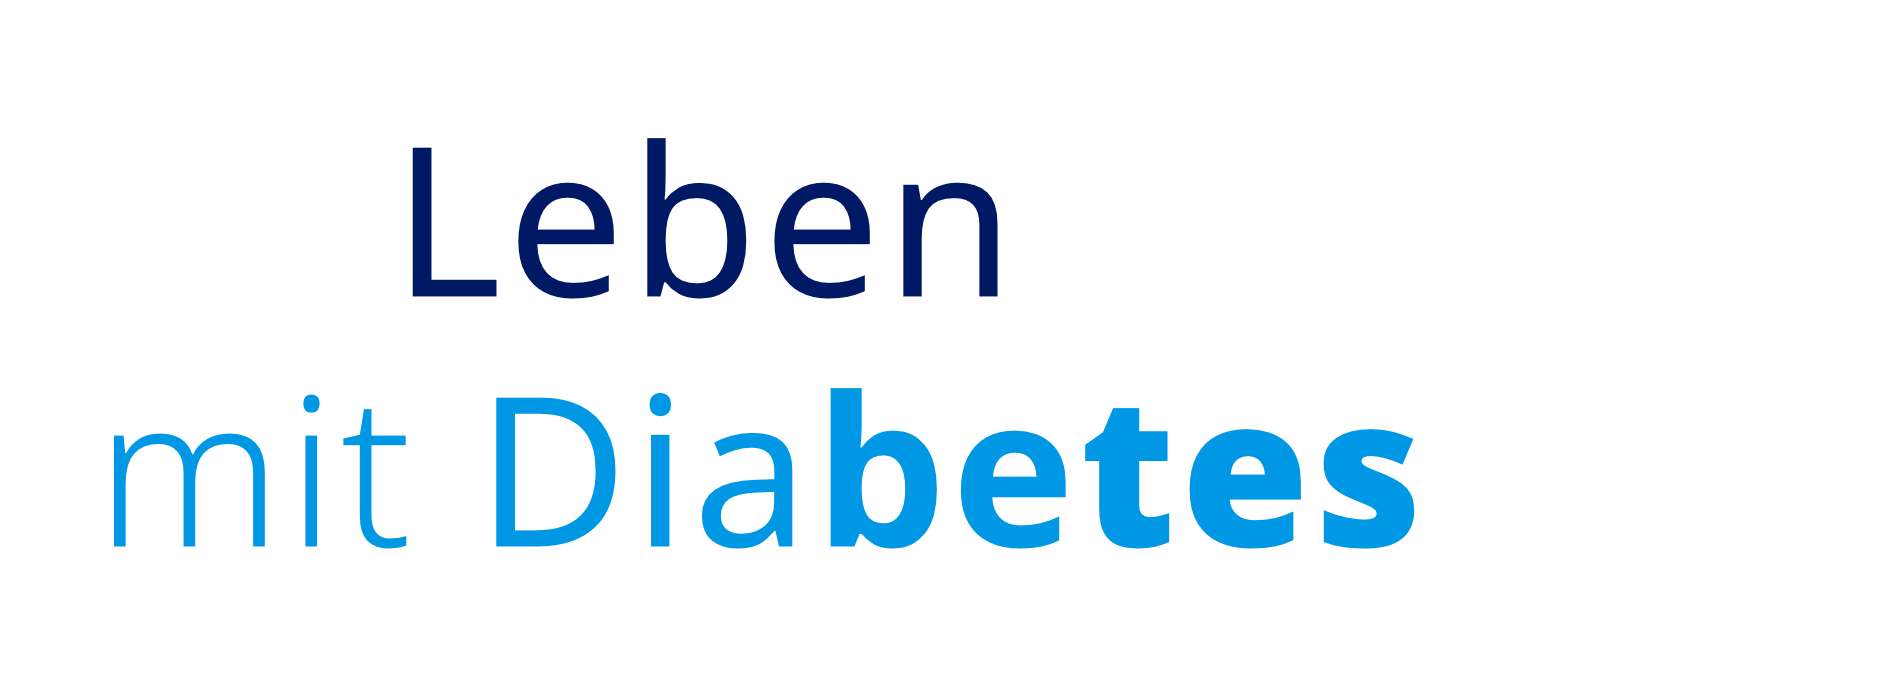 text_leben mit diabetes